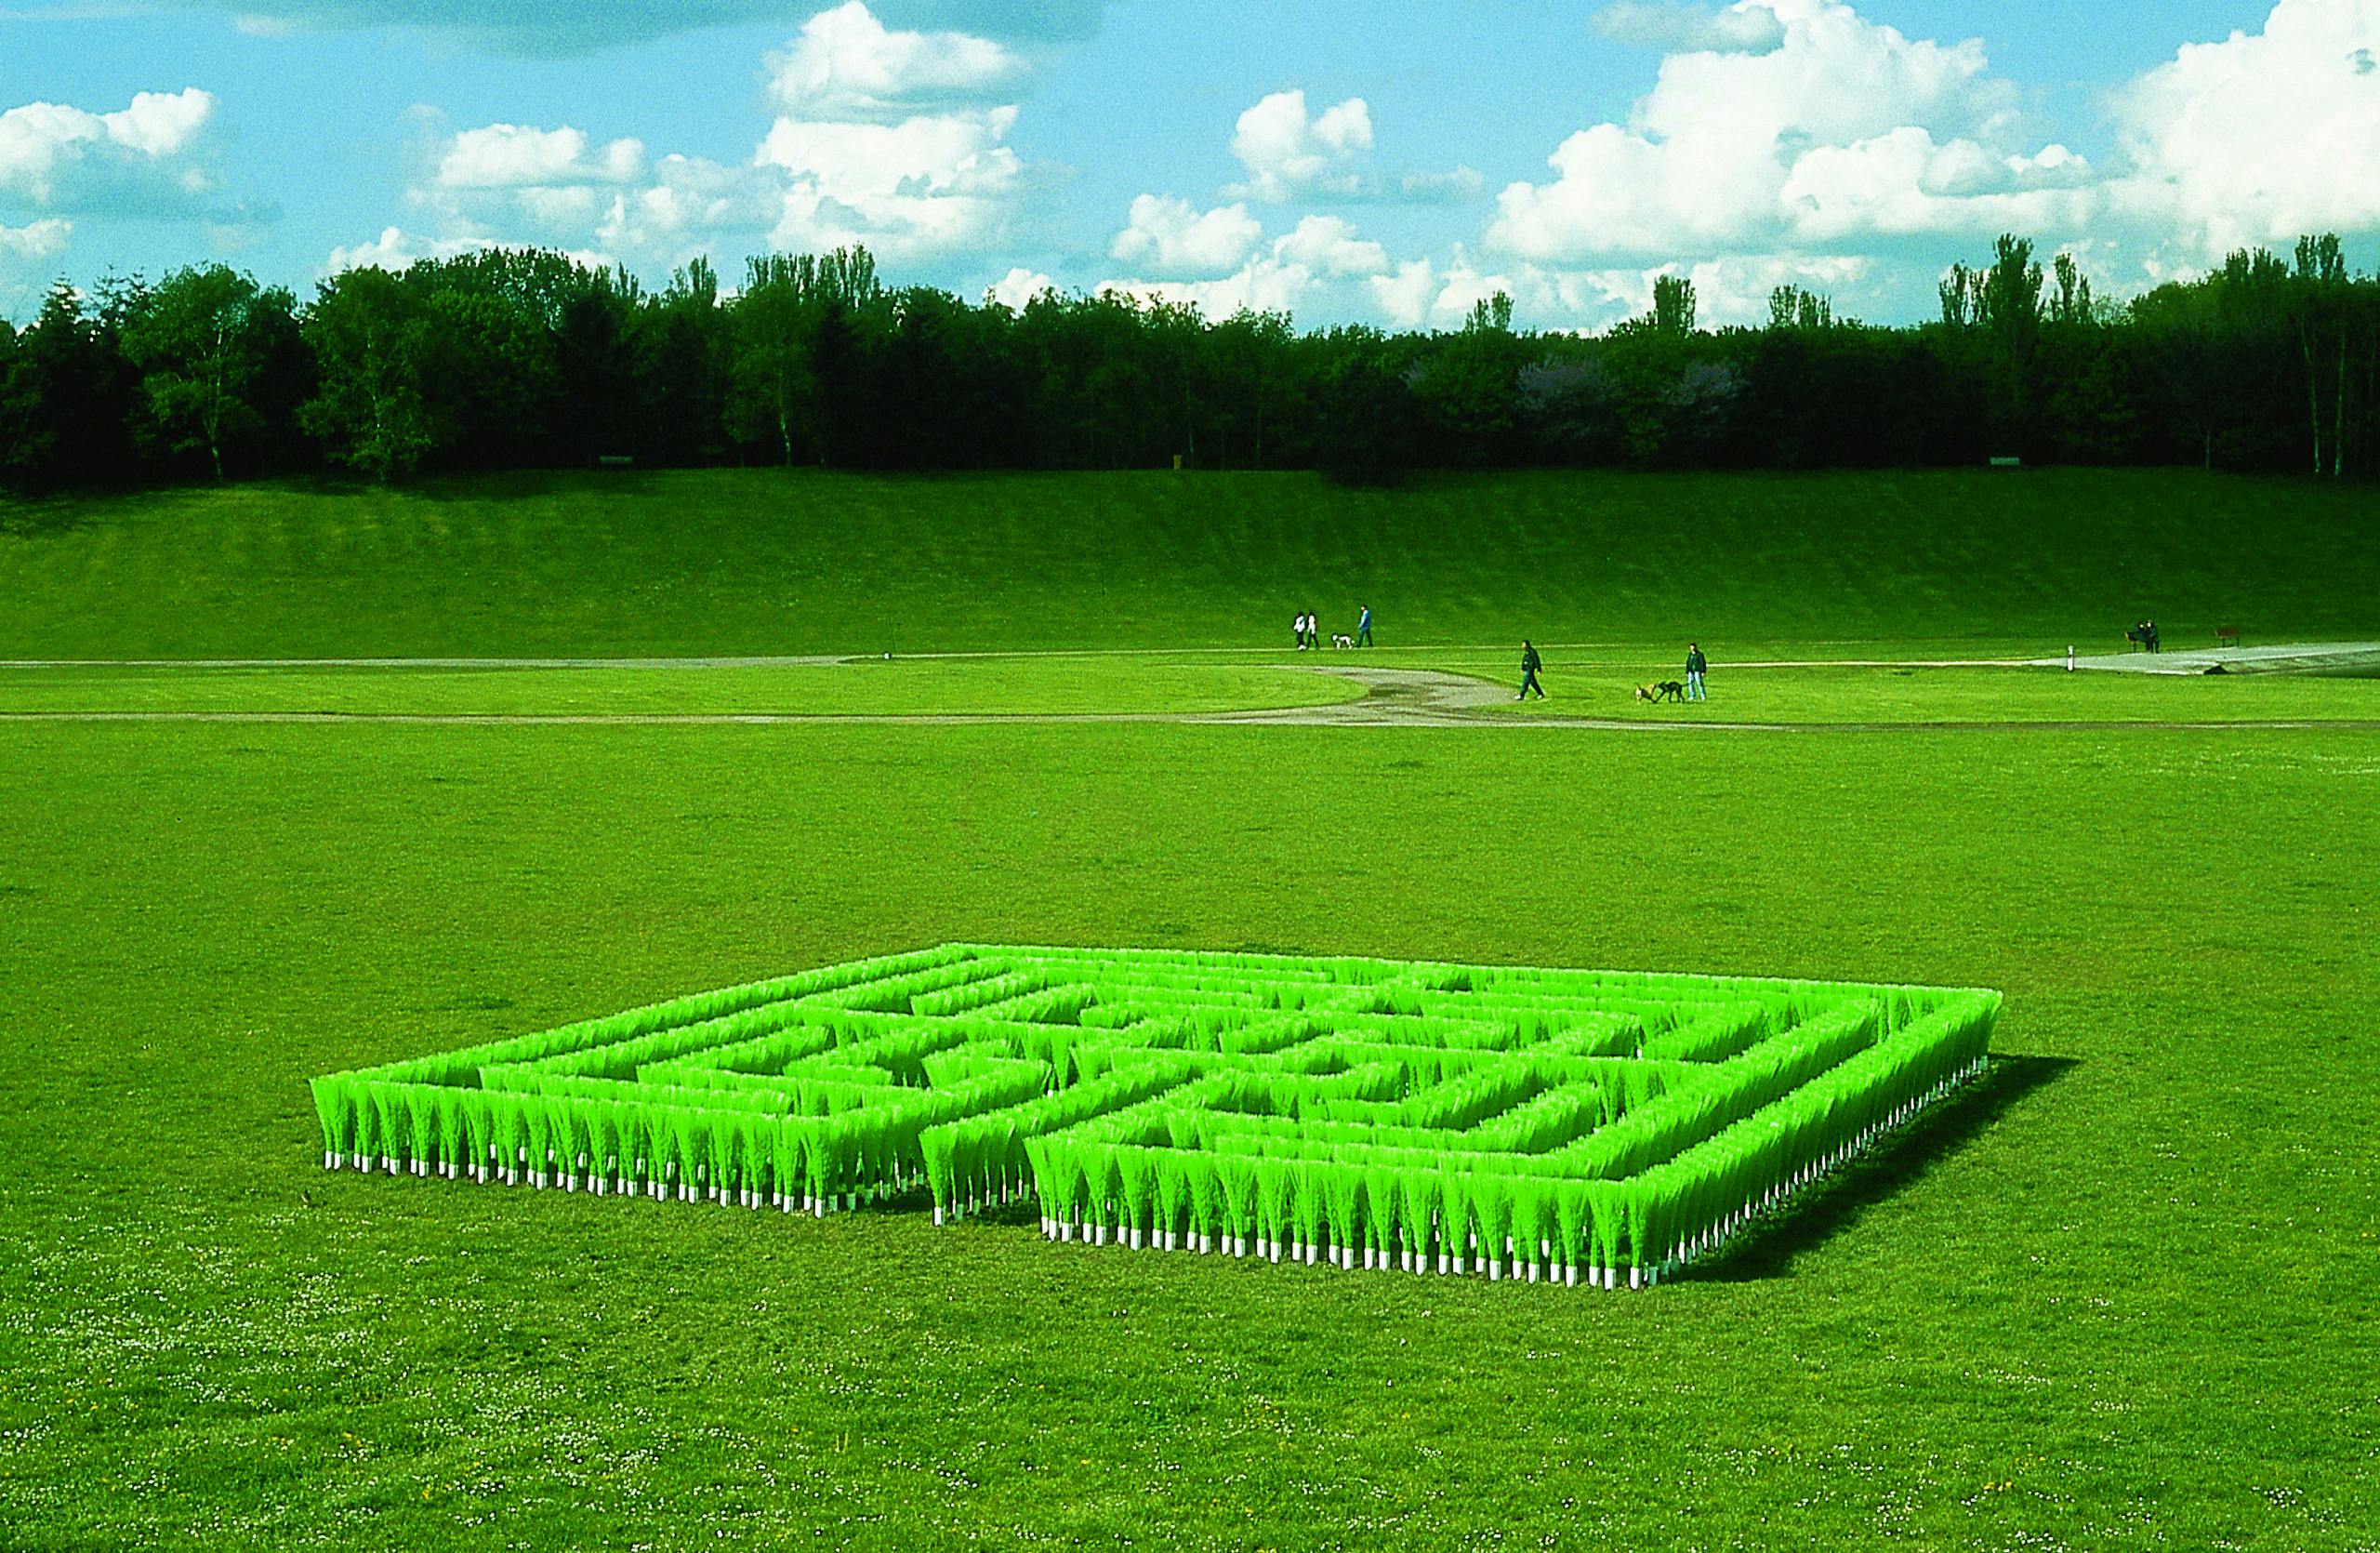 Installation eines quadratischen Labyrinths aus grünen Besenstielen auf einer Grünfläche.